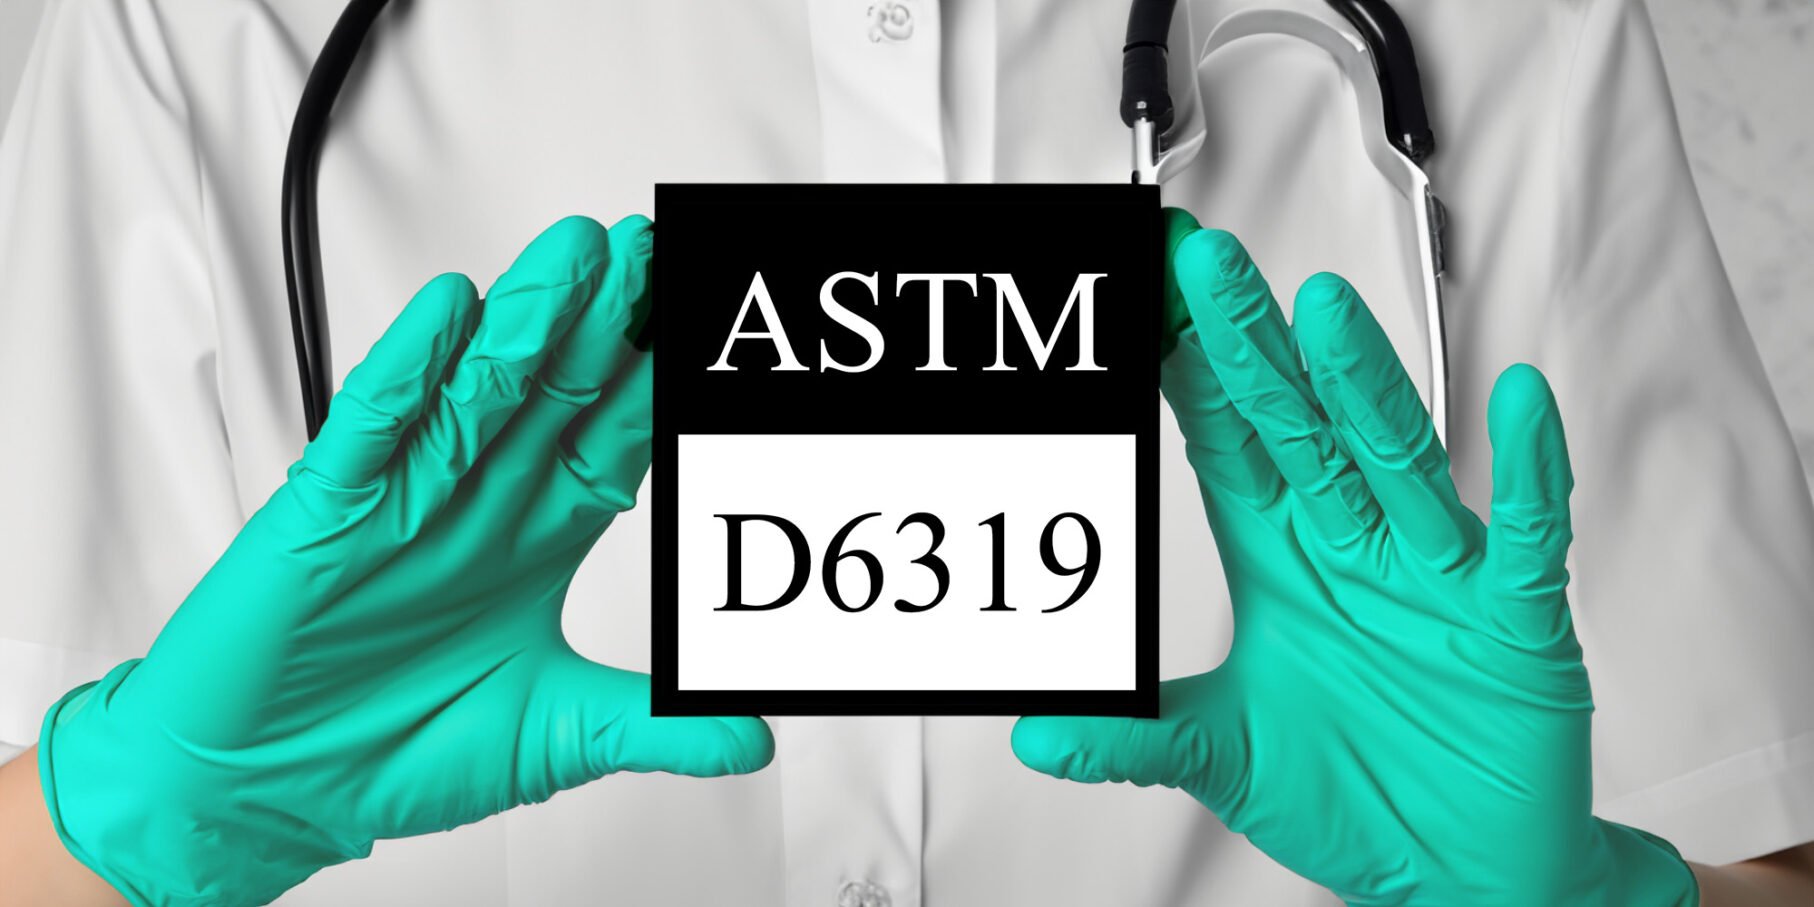 Green gloves holding ASTM D6319 logo